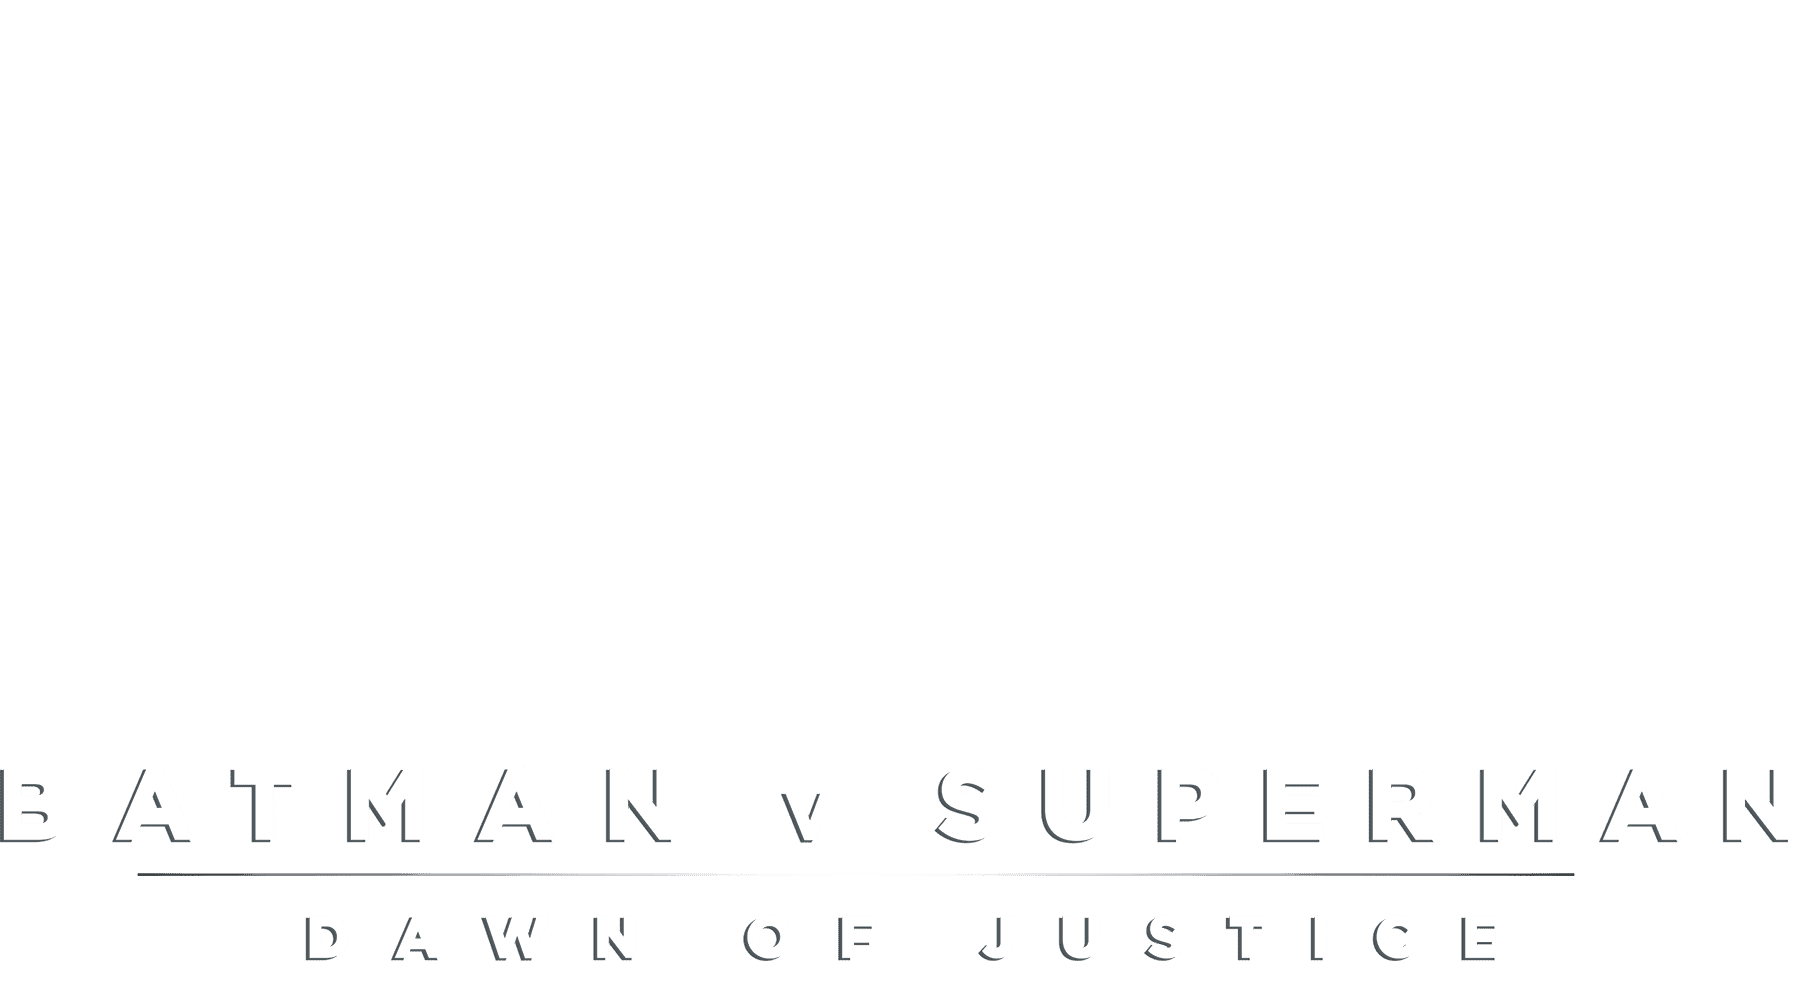 Batman V Superman: Dawn of Justice